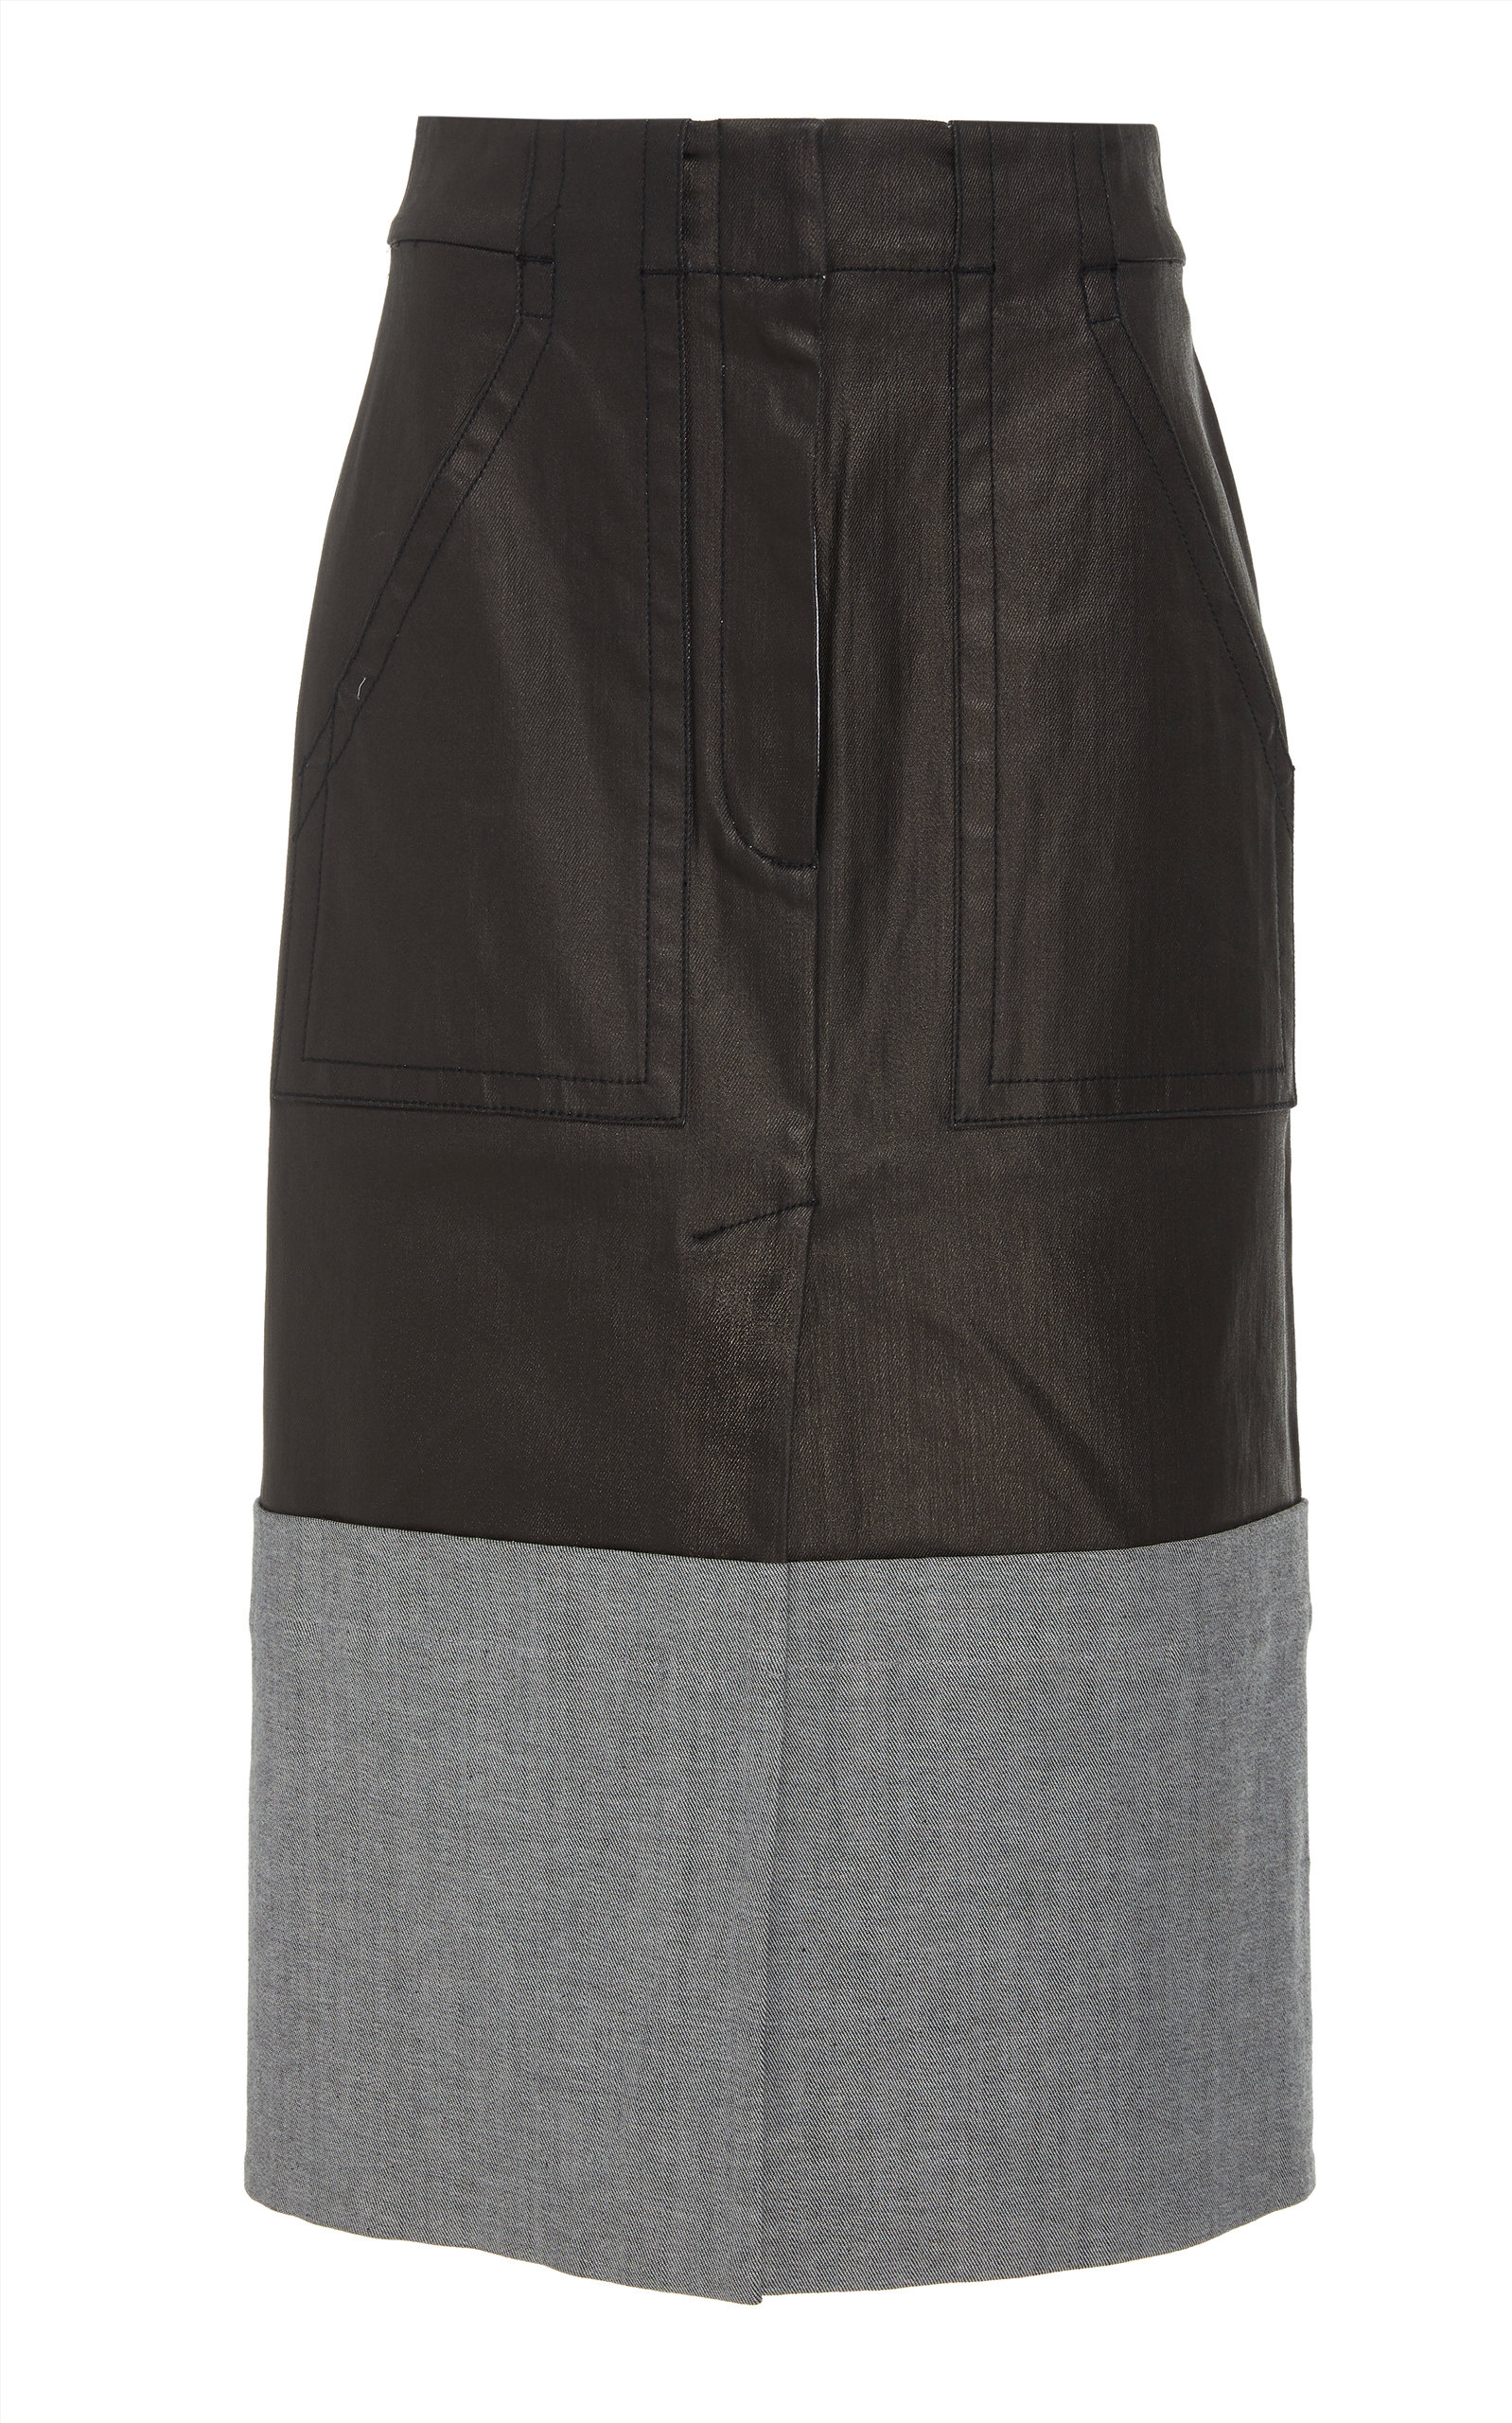 denim coated skirt